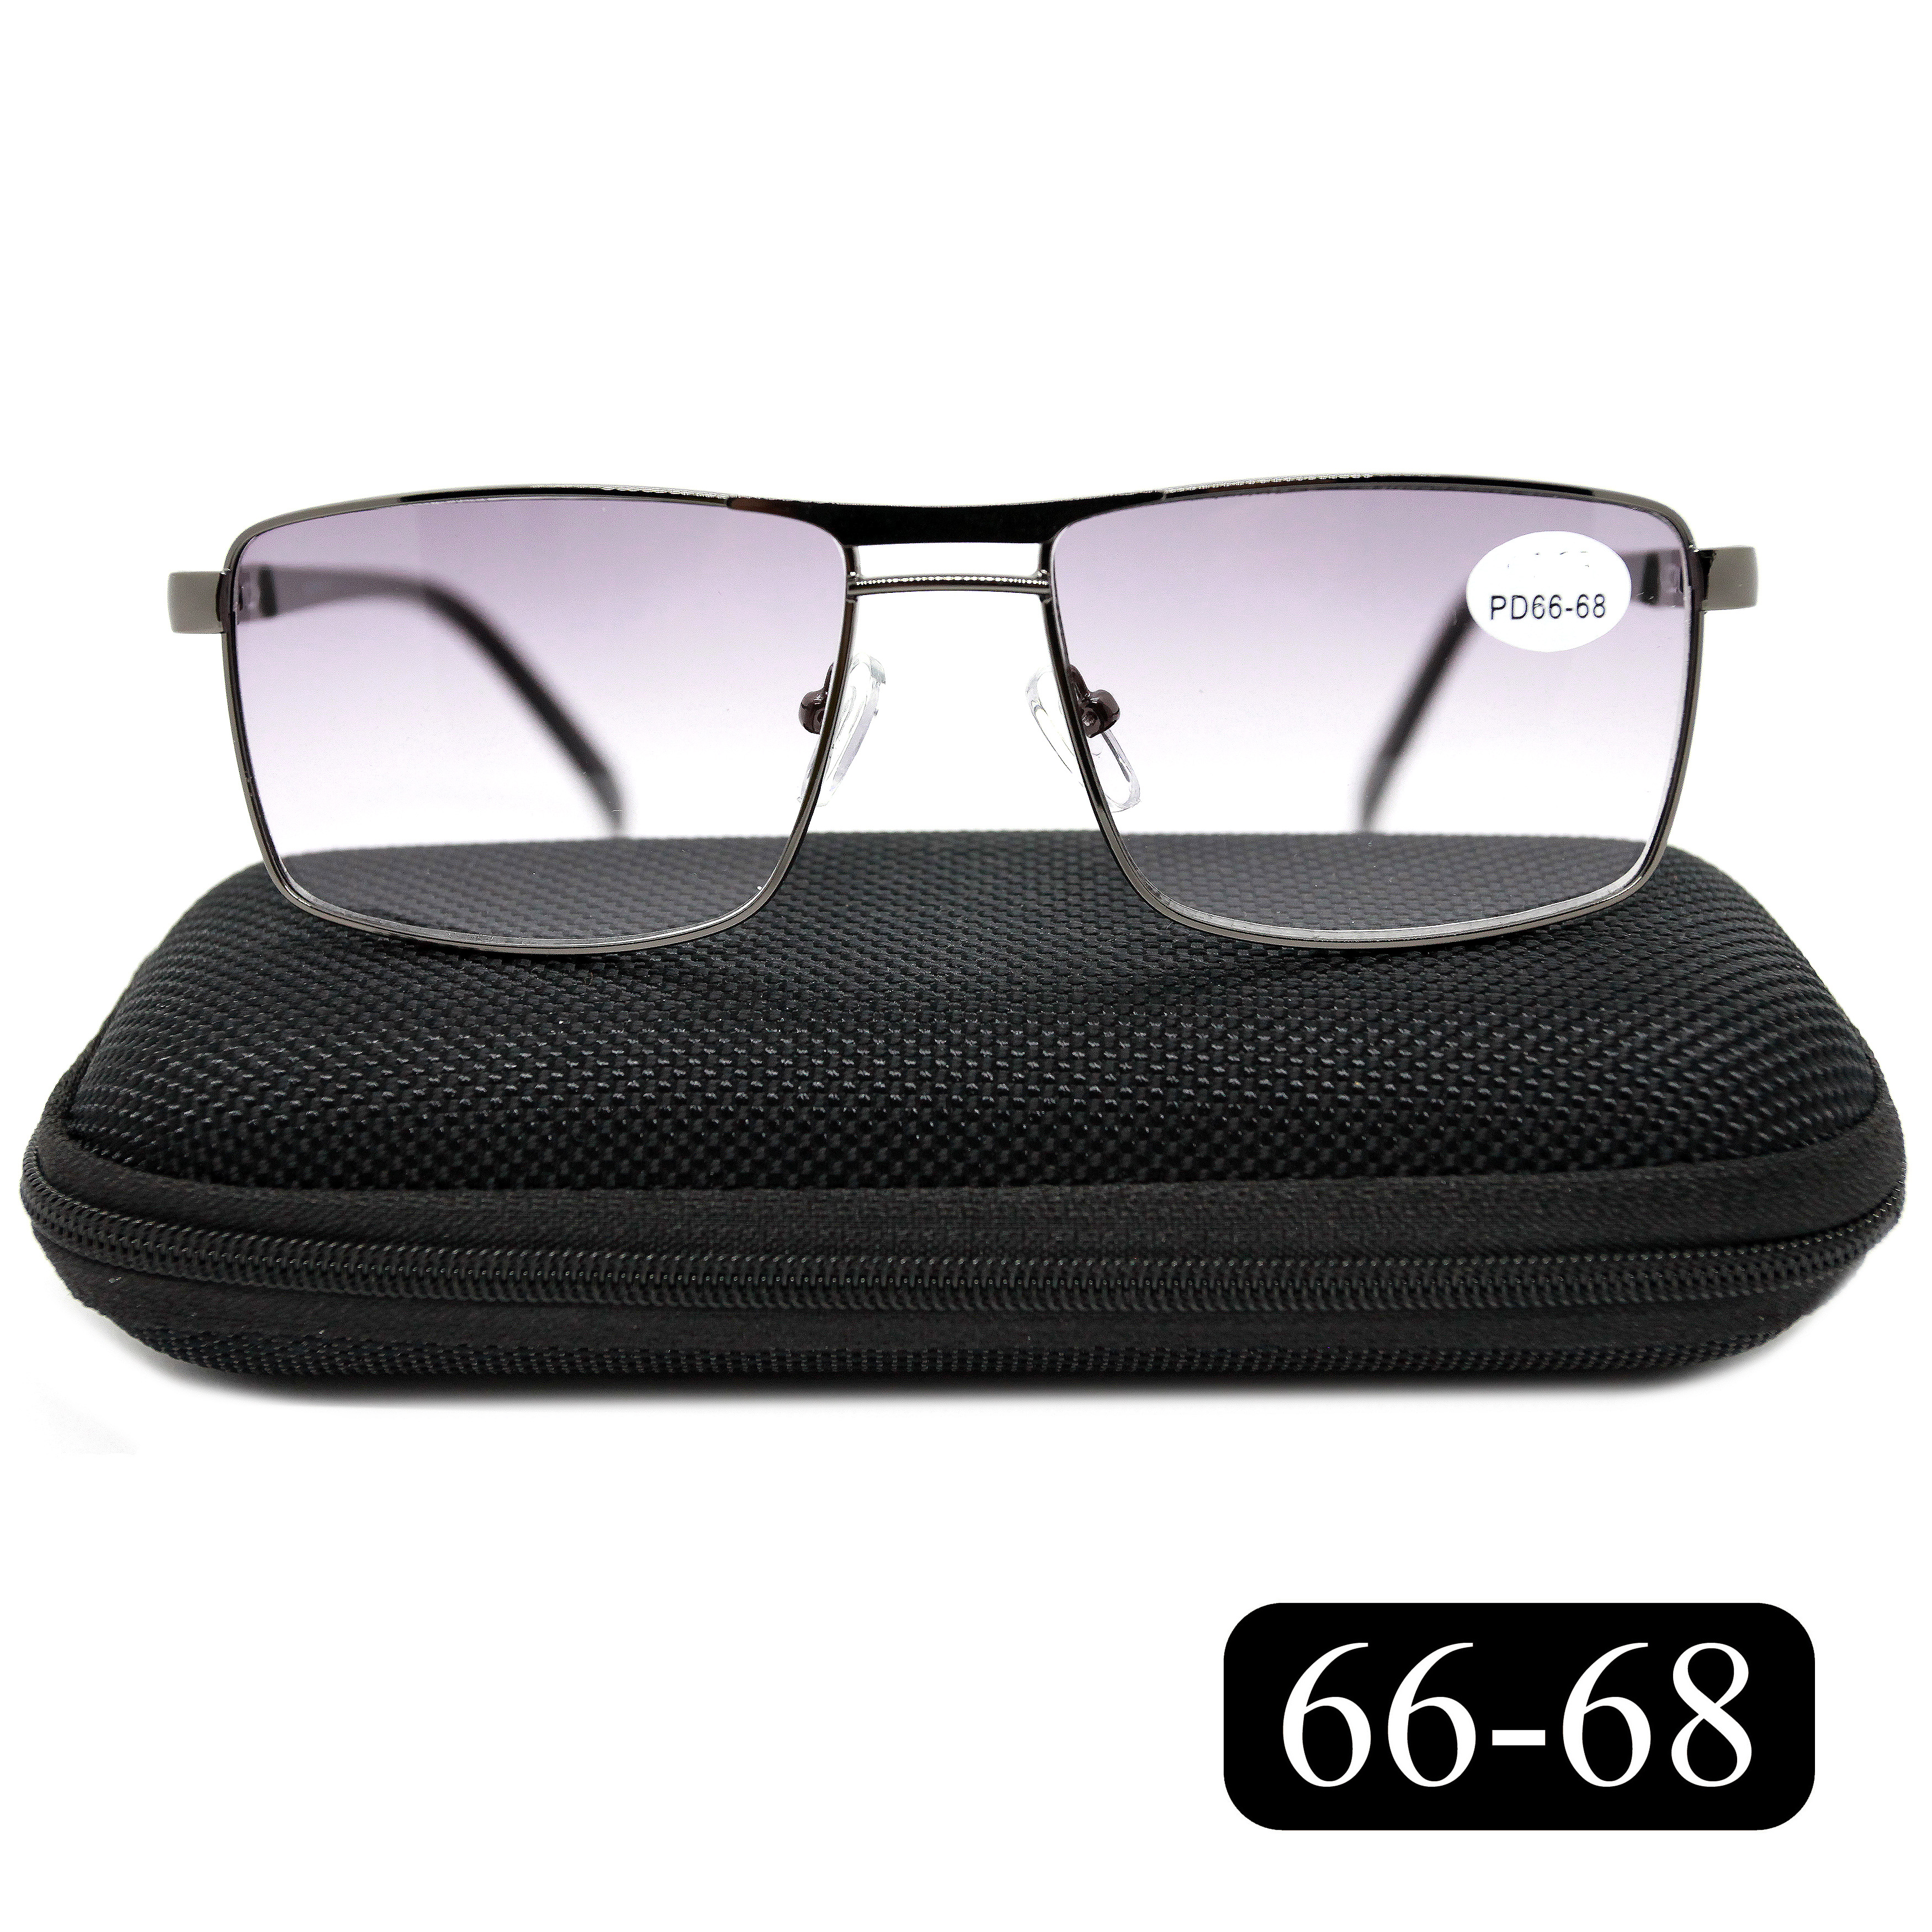 Готовые очки Salivio 5009 +1,50, c футляром, с тонировкой, черный, РЦ 66-68